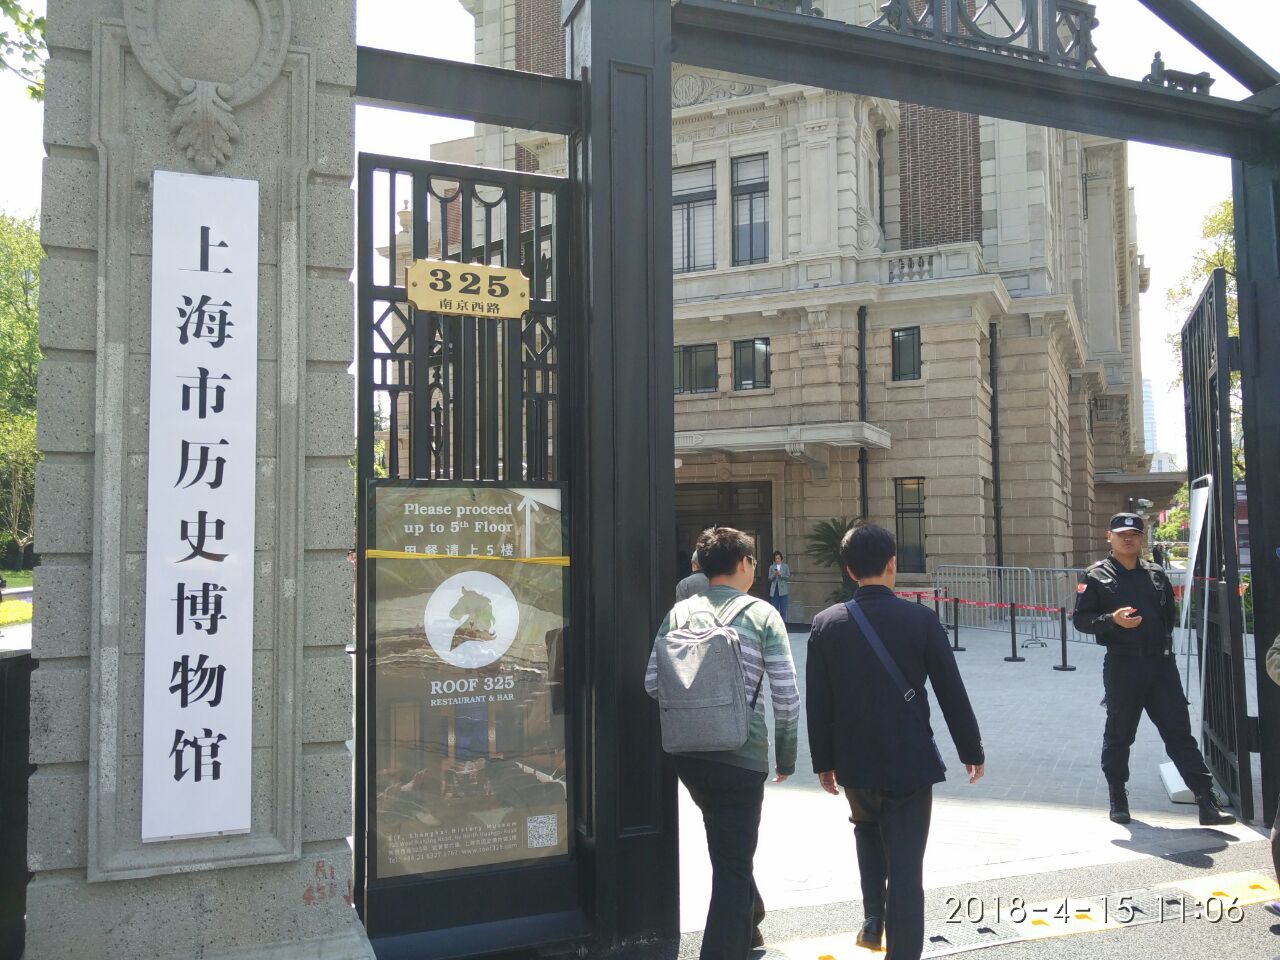 上海革命历史博物馆筹备处好玩吗,上海革命历史博物馆筹备处景点怎么